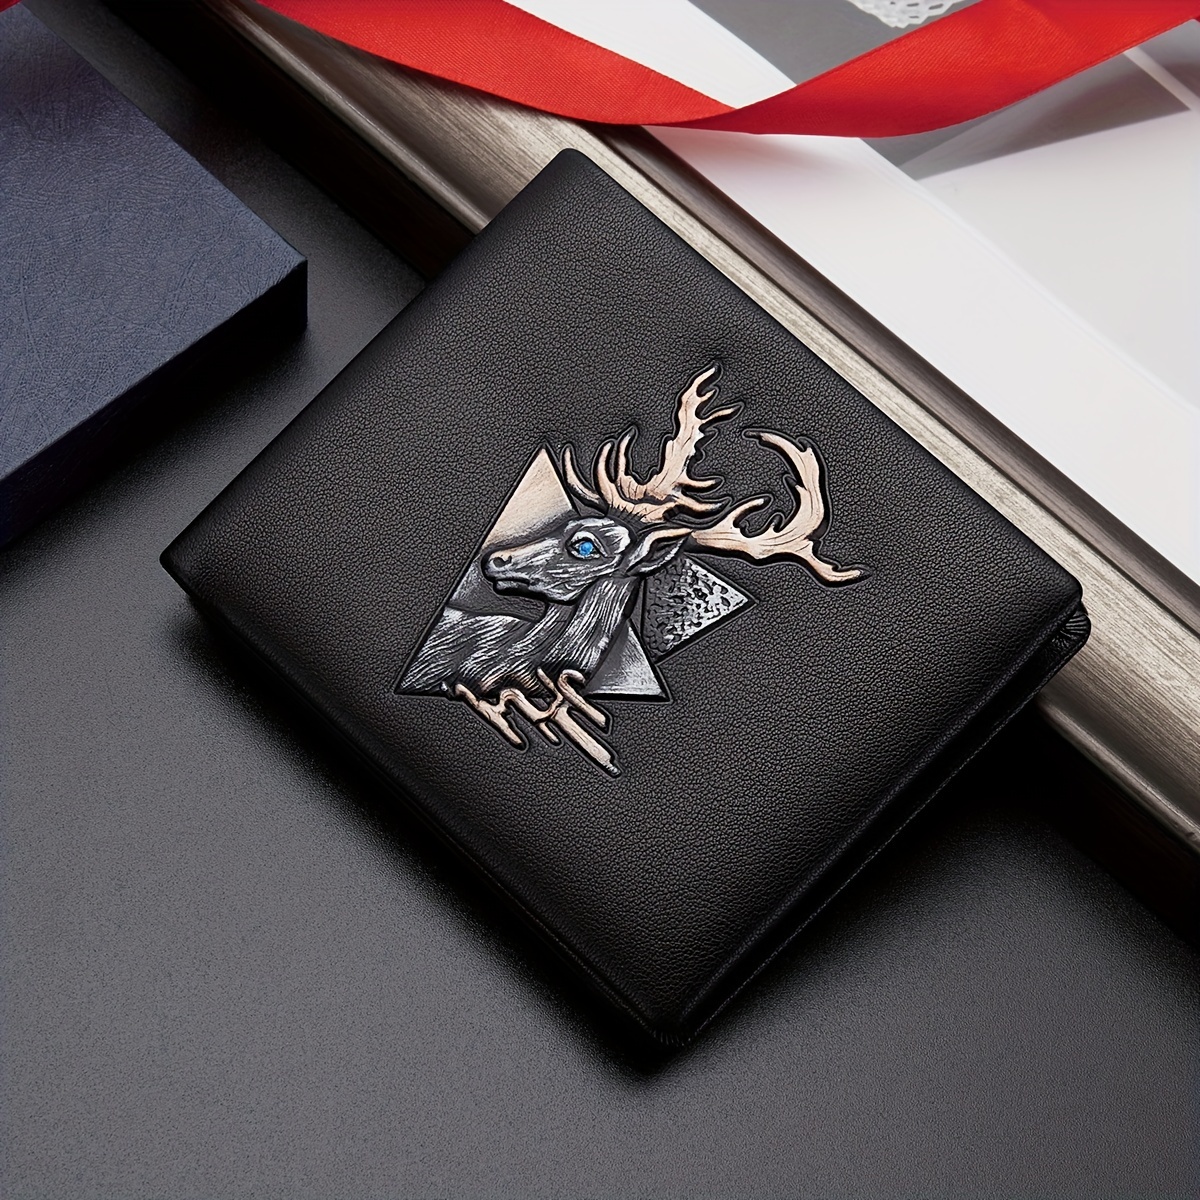 

Bison Denim Genuine Leather Wallet, Vintage Black Elk Pattern Card Holder, Best Gift For Men